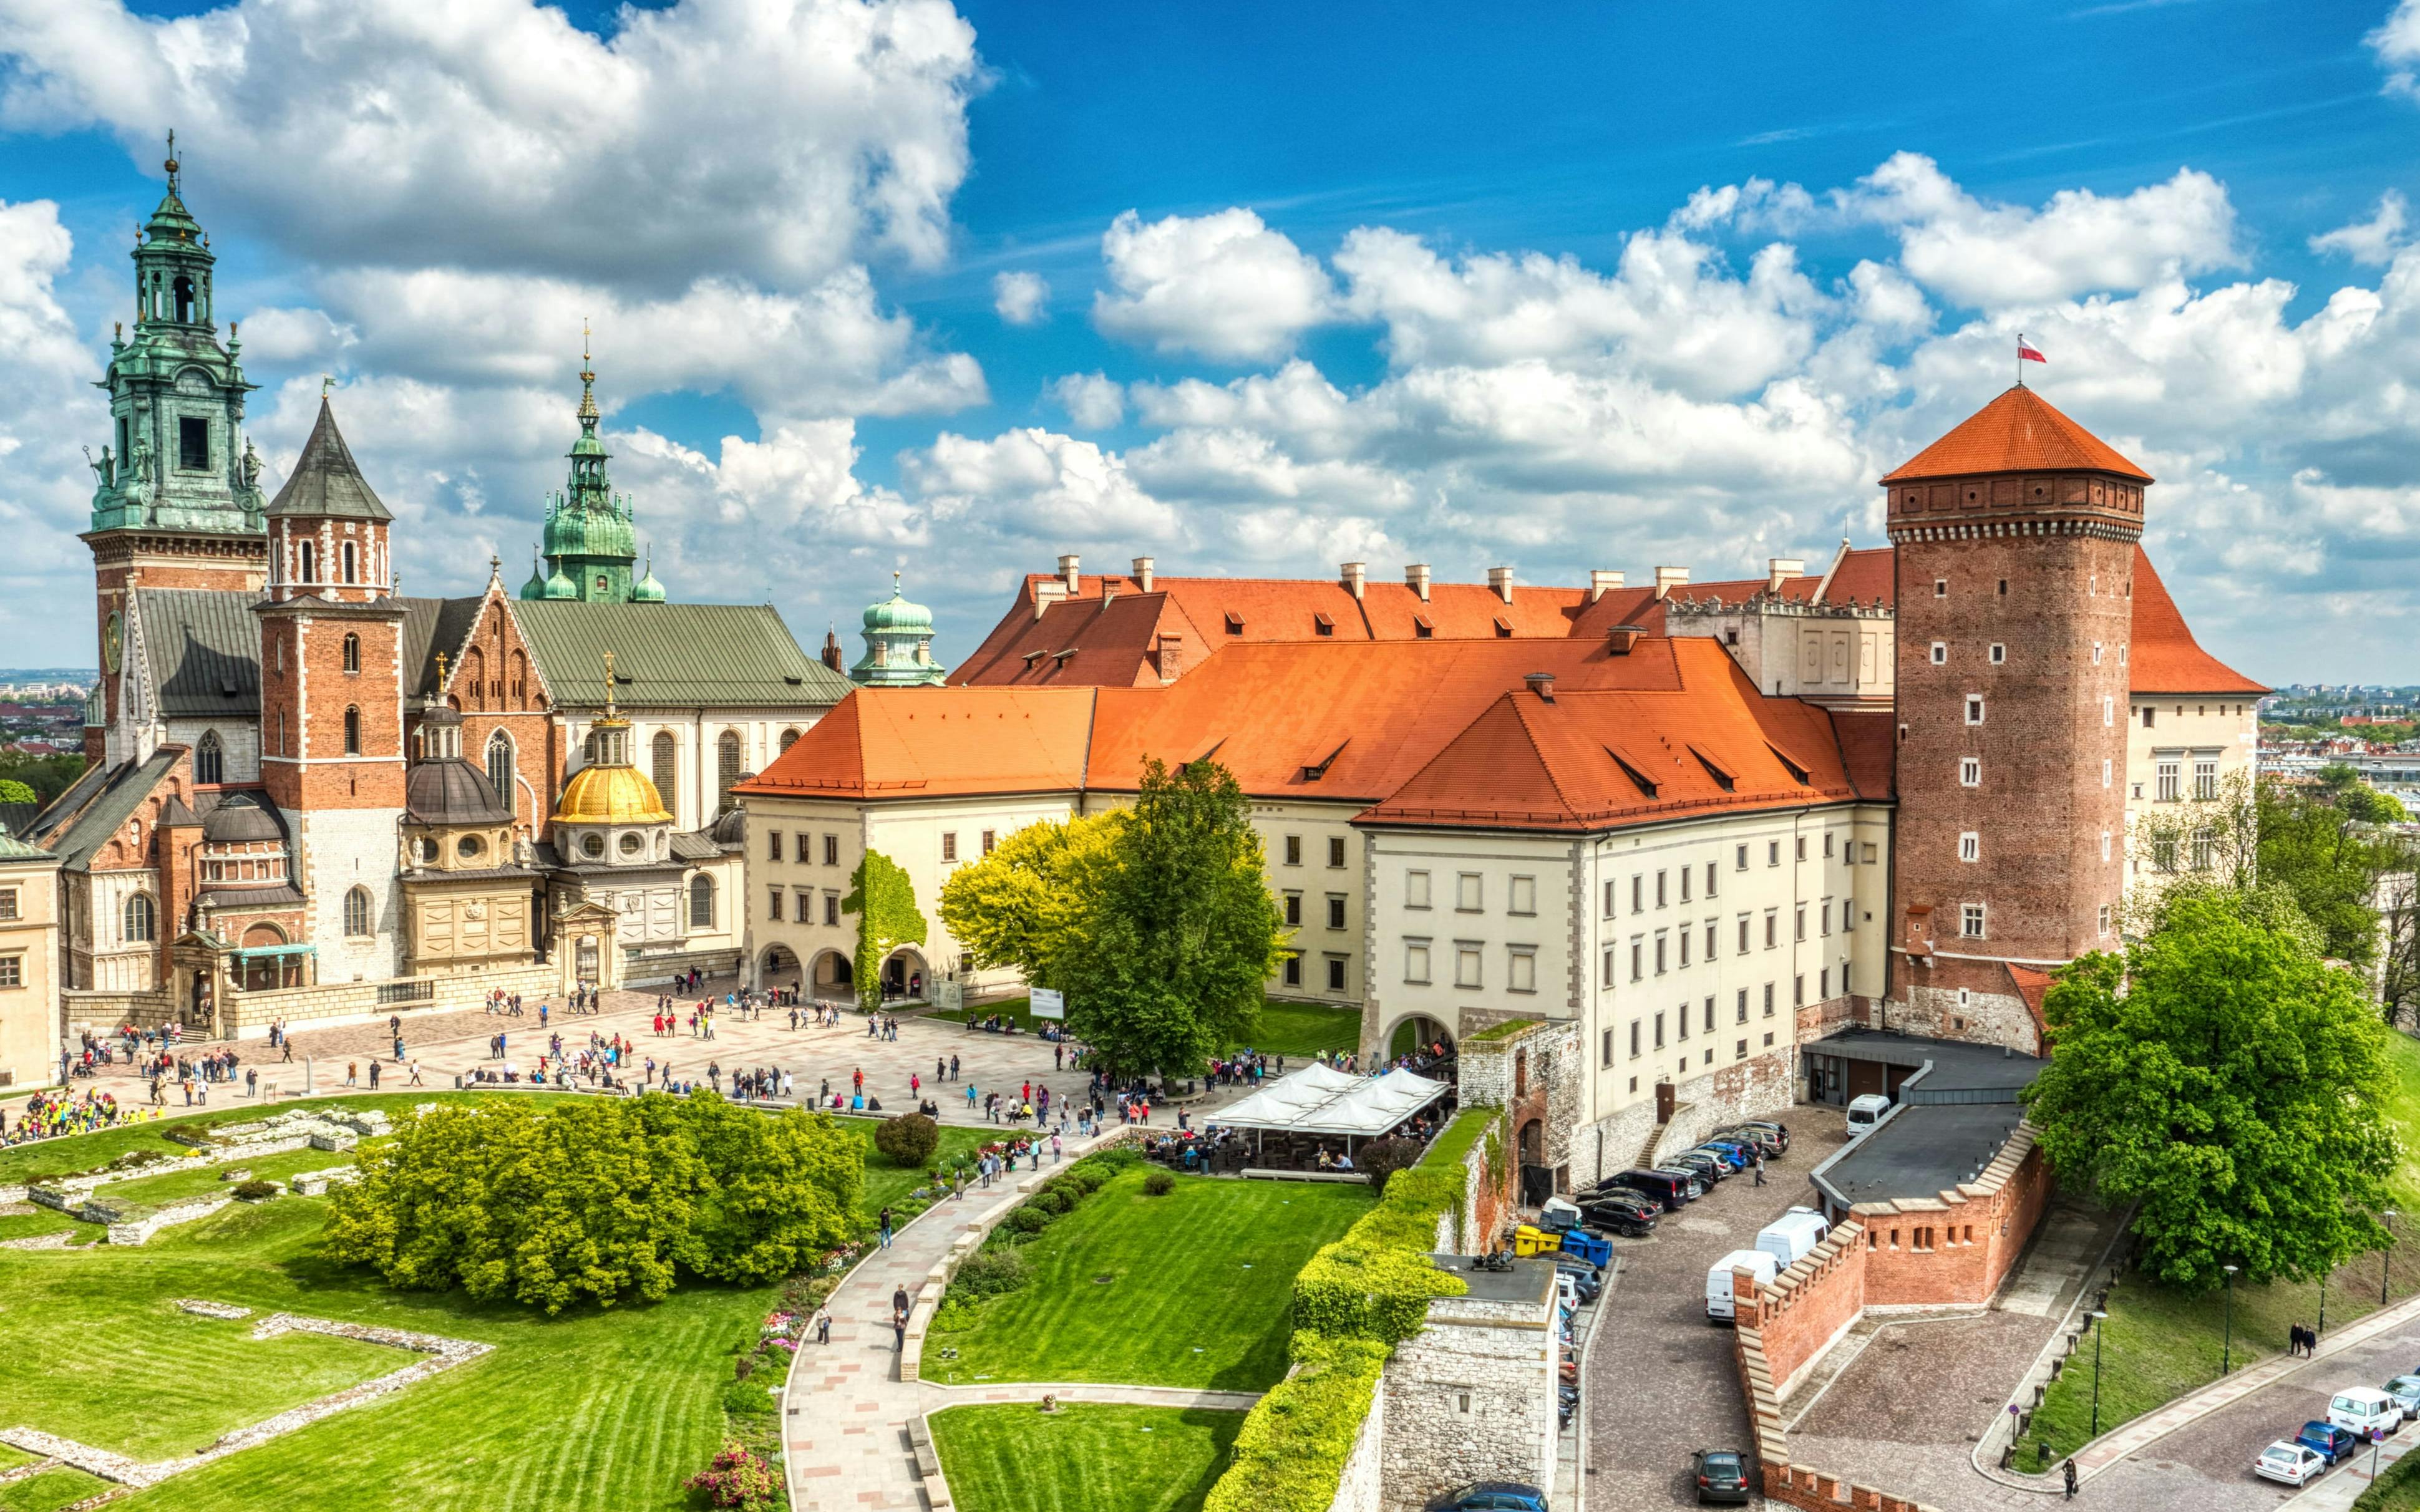 Visita audioguiada al castillo de Wawel y a la colina de Wawel